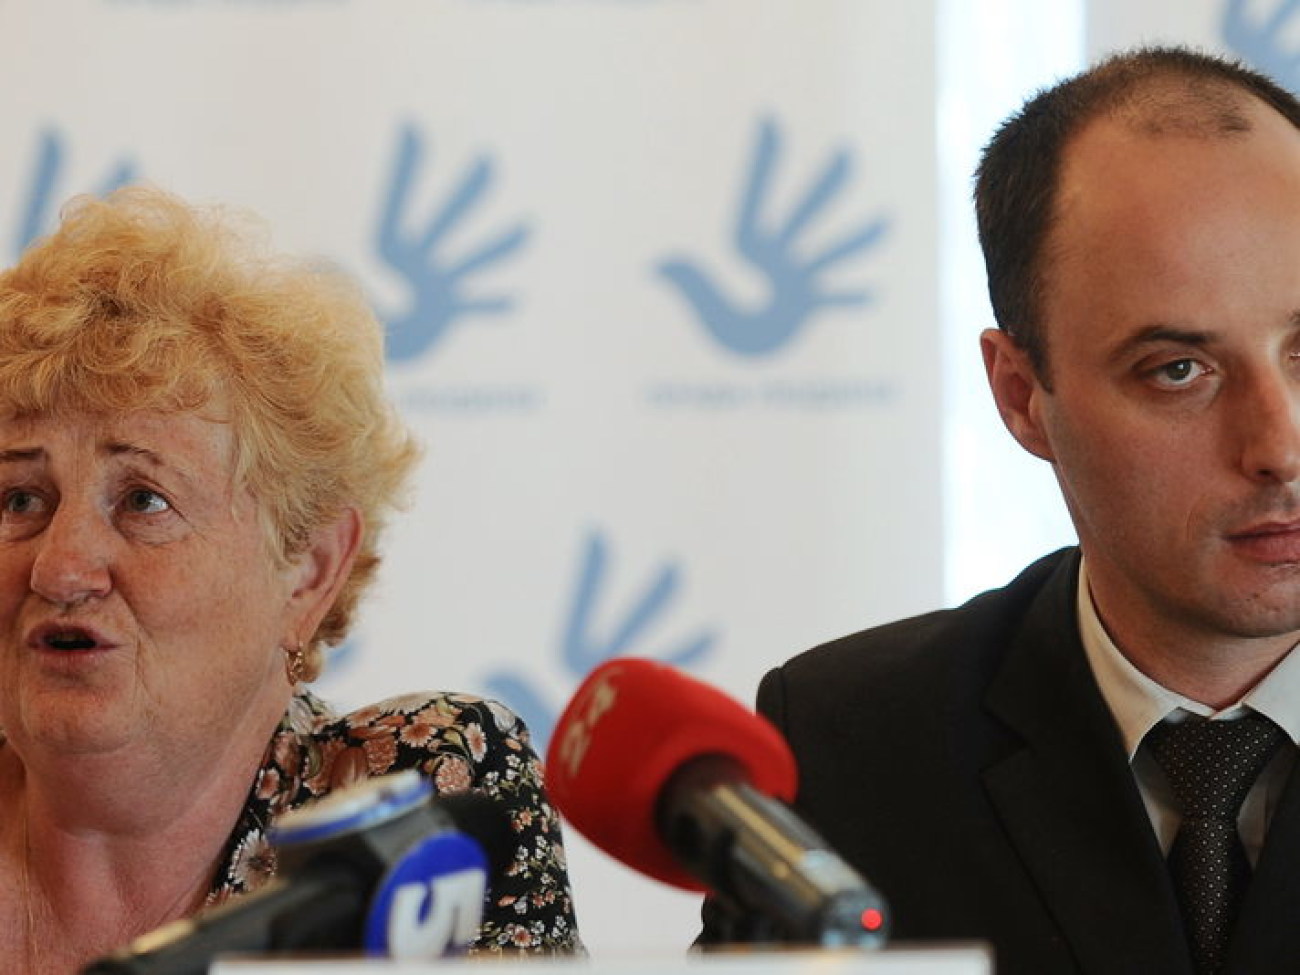 В Киеве провели пресс-конференцию по вопросам смерти в СИЗО, 11 июня 2013г.